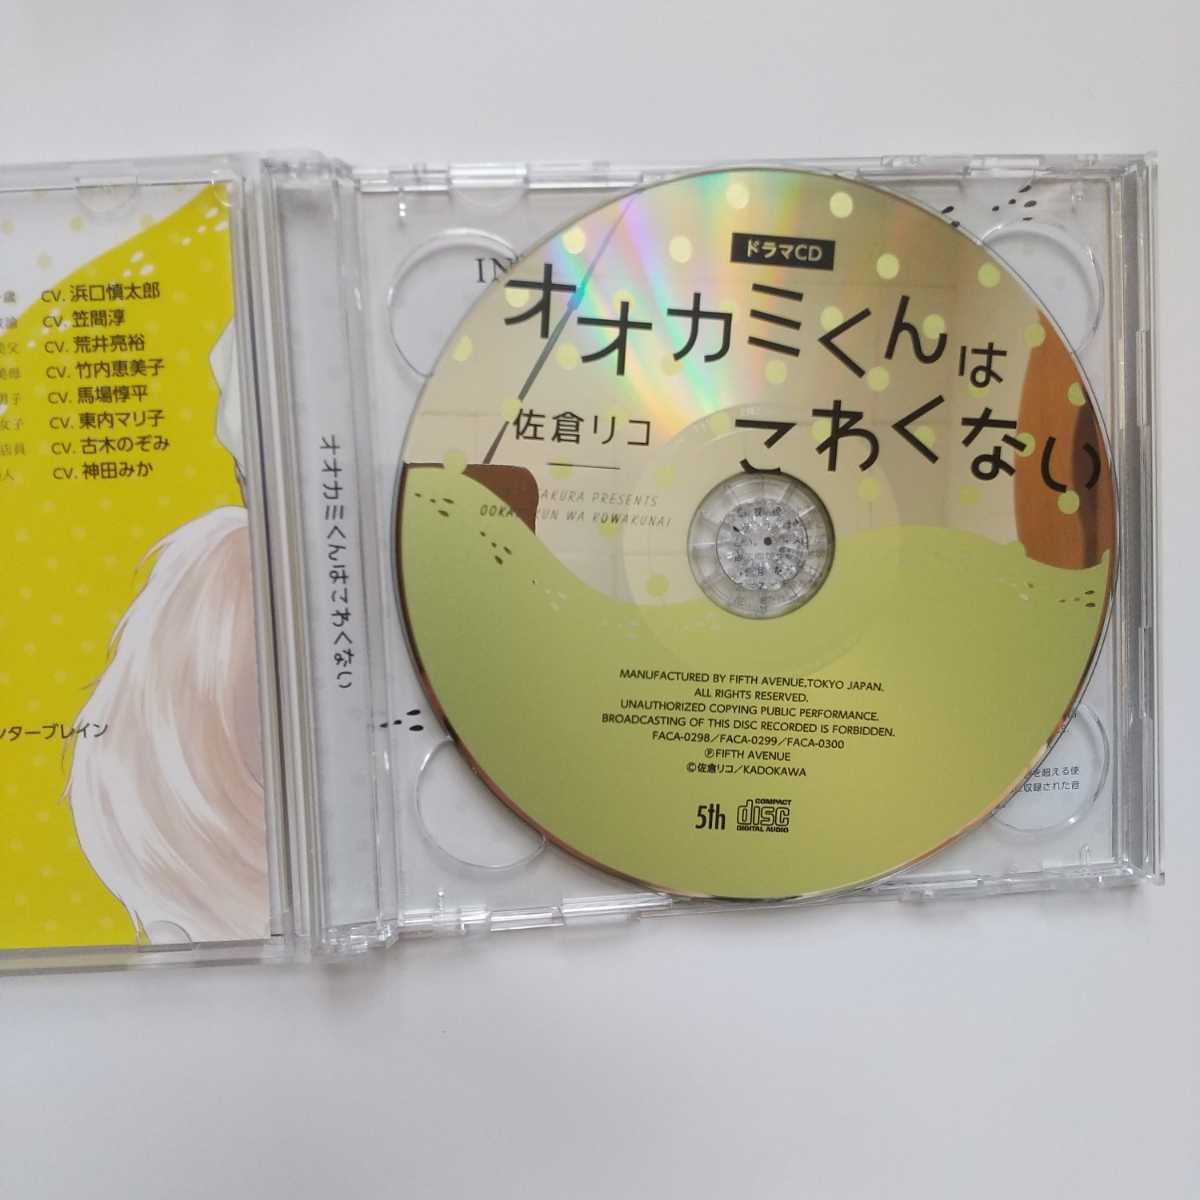  аниме ito ограничение запись oo kami kun. ... нет Сакура .. драма CD BLCD